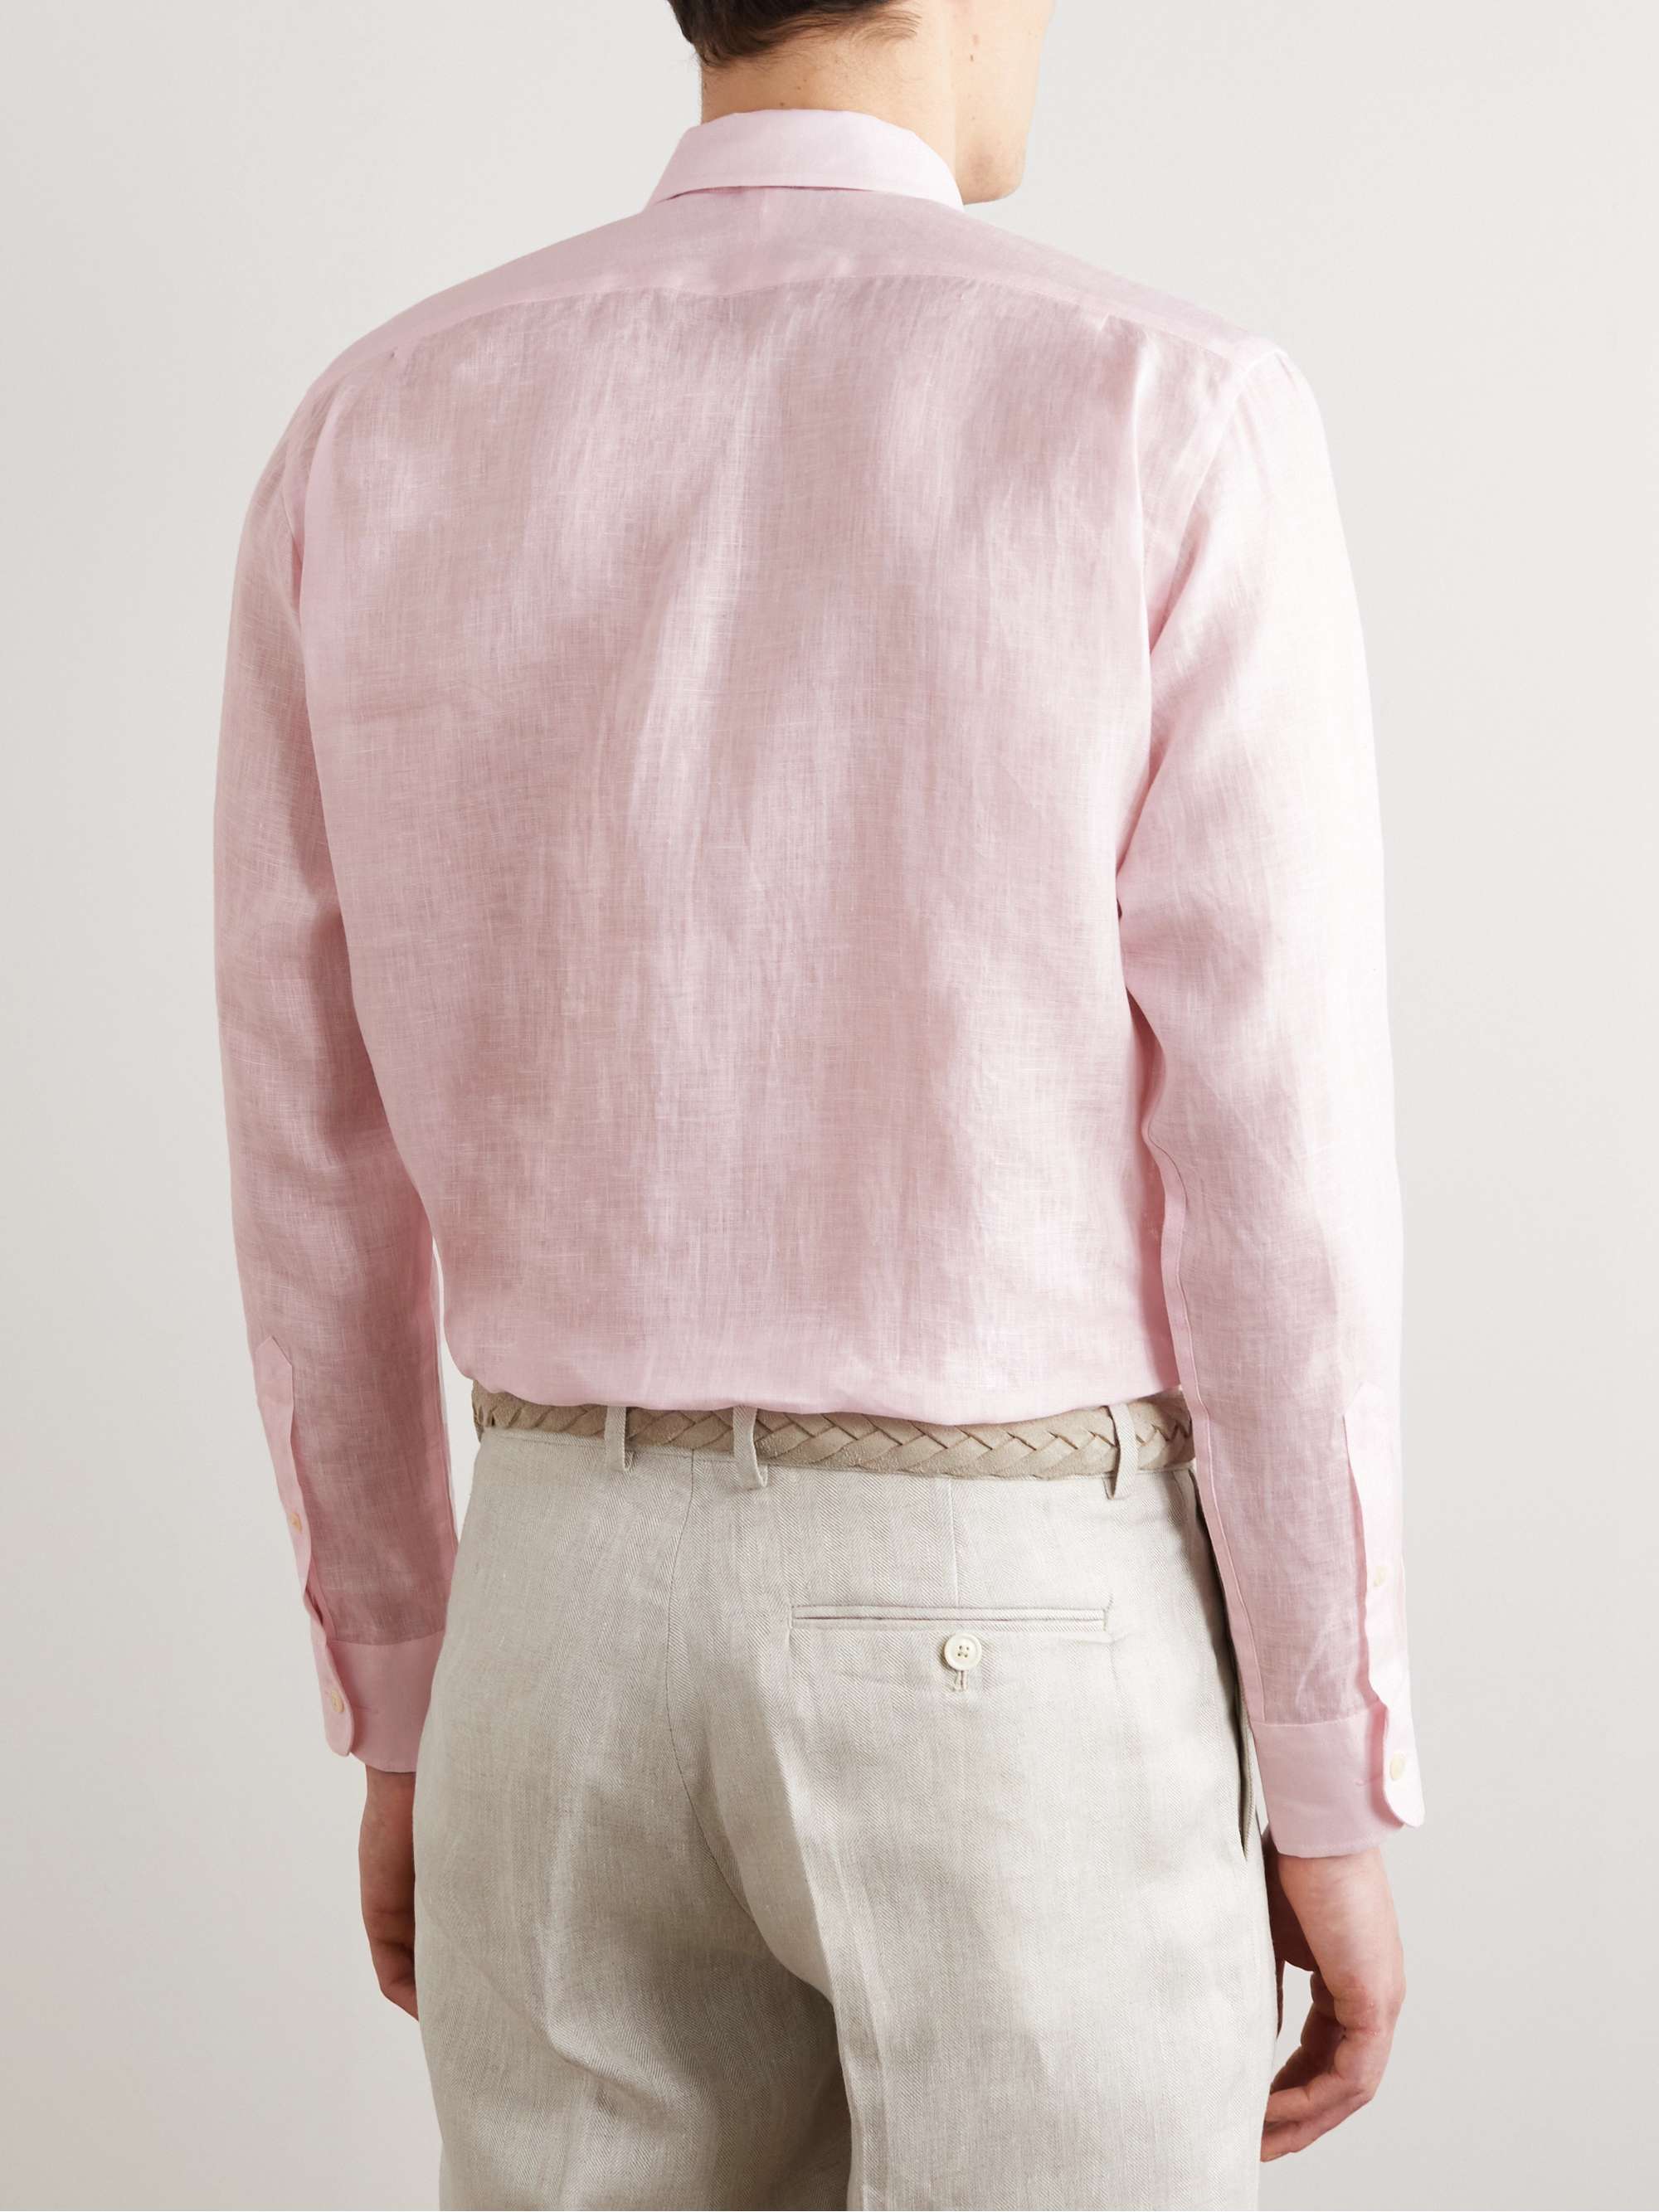 FAVOURBROOK Colne Linen Shirt